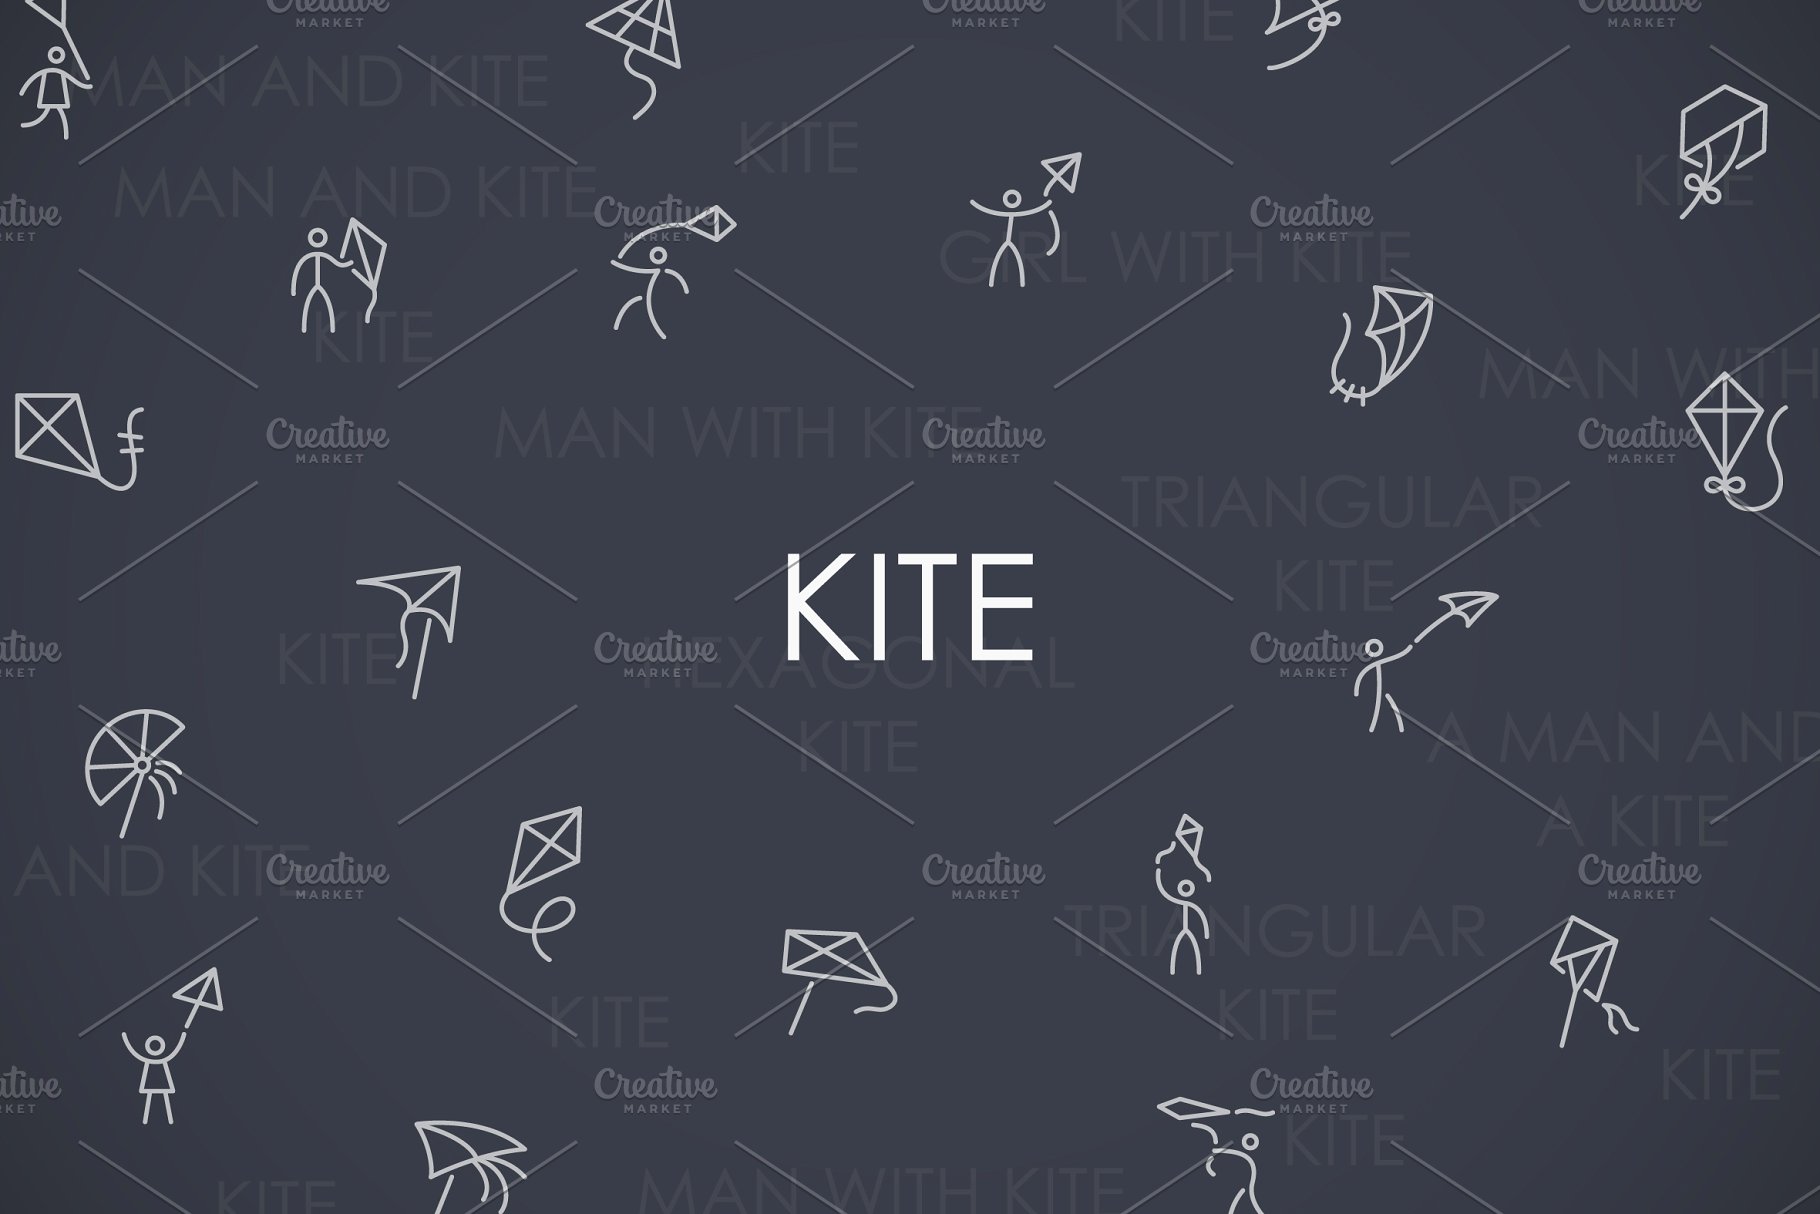 中国风筝元素图标大全 Kite thinline icons